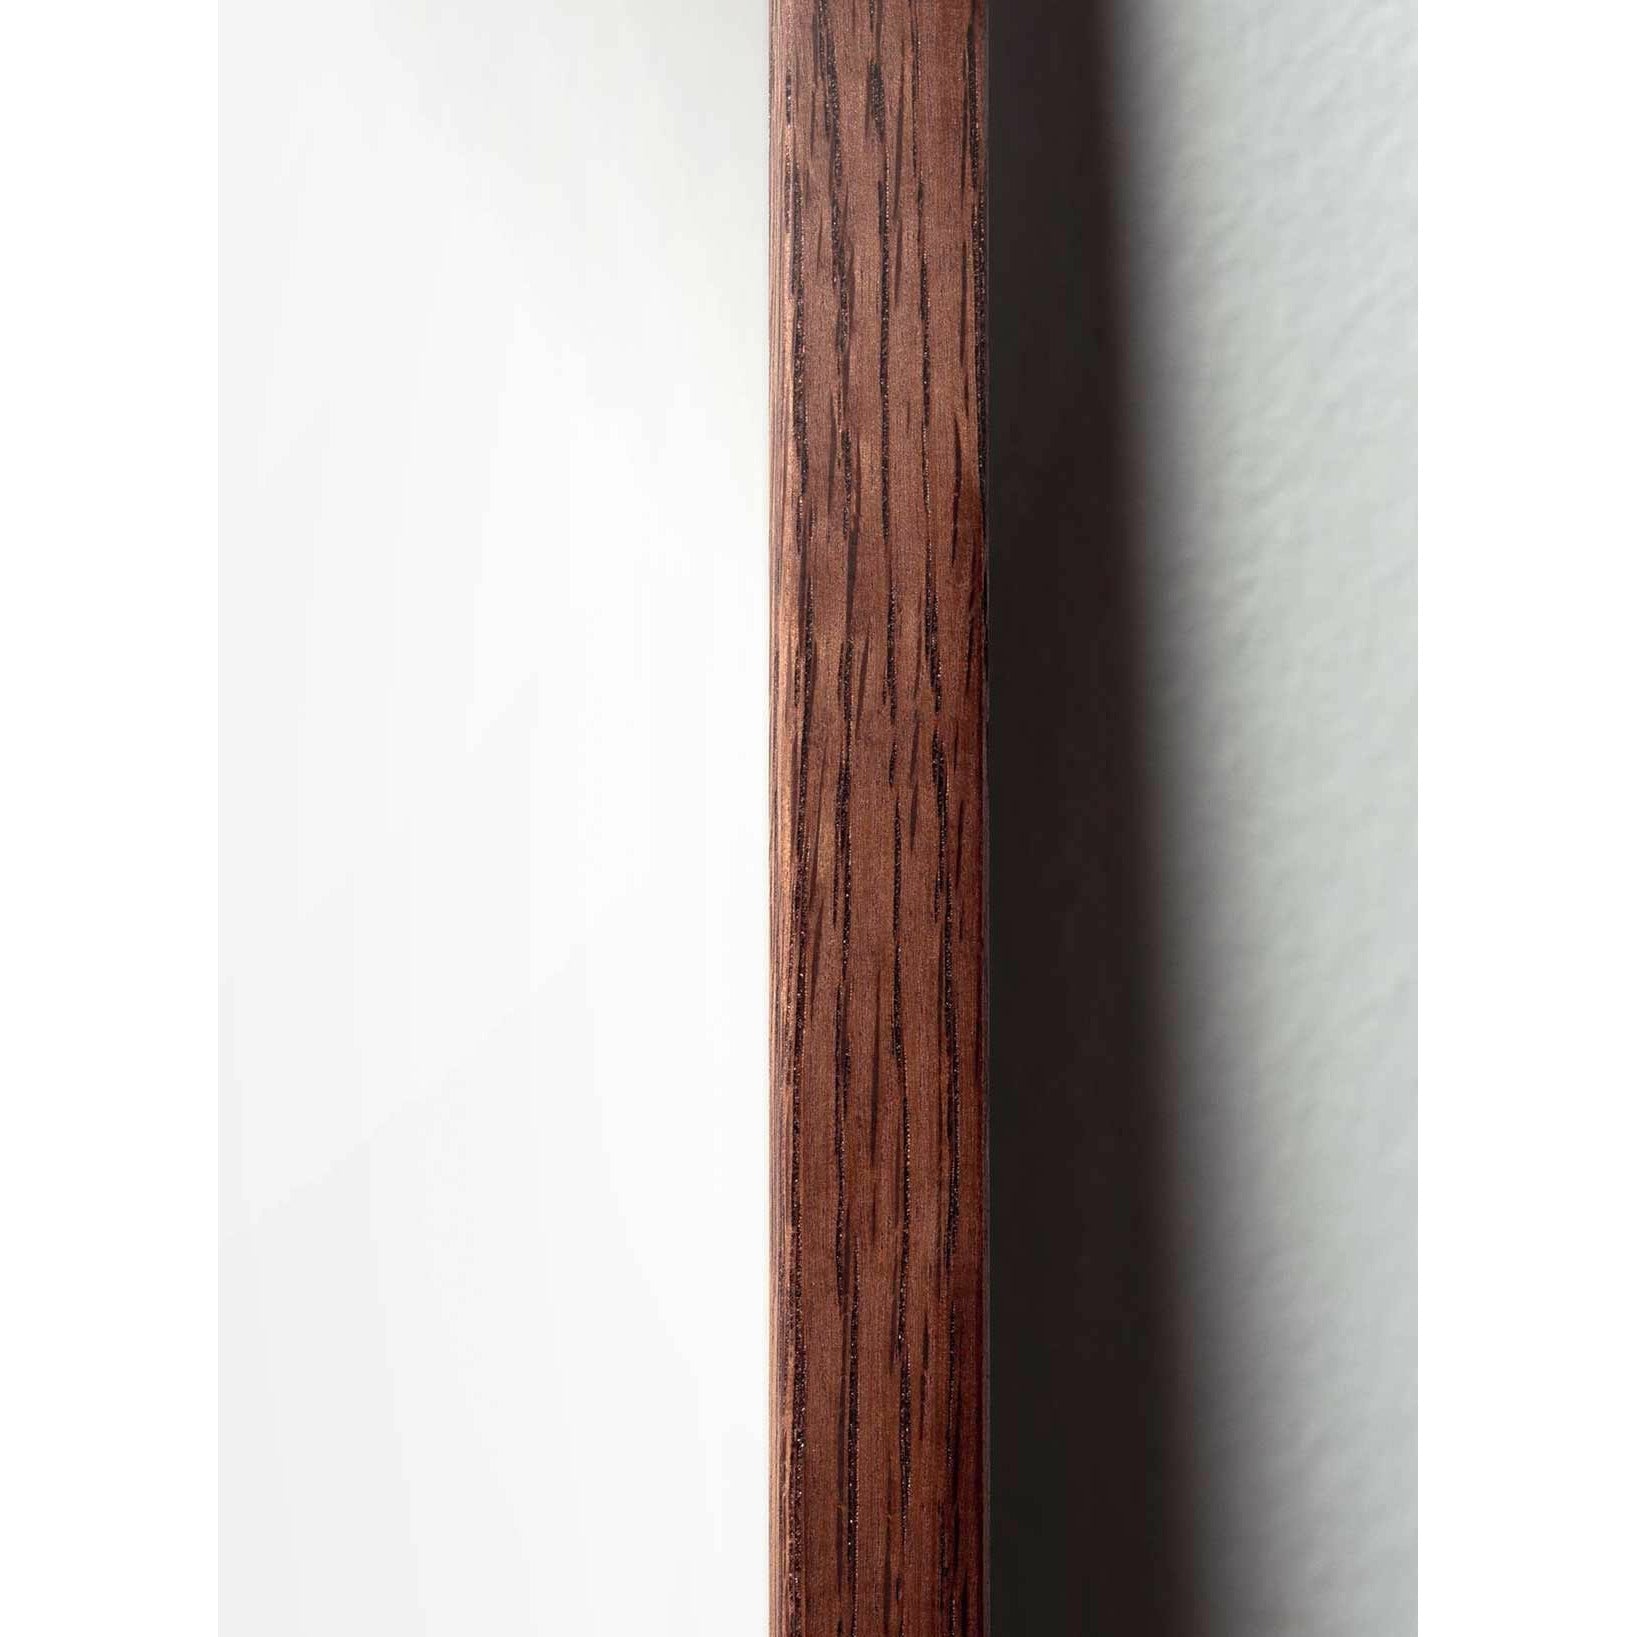 Hugarfóstur Pine keilu klassísk veggspjald, dökk tré ramma 30x40 cm, sandlitaður bakgrunnur